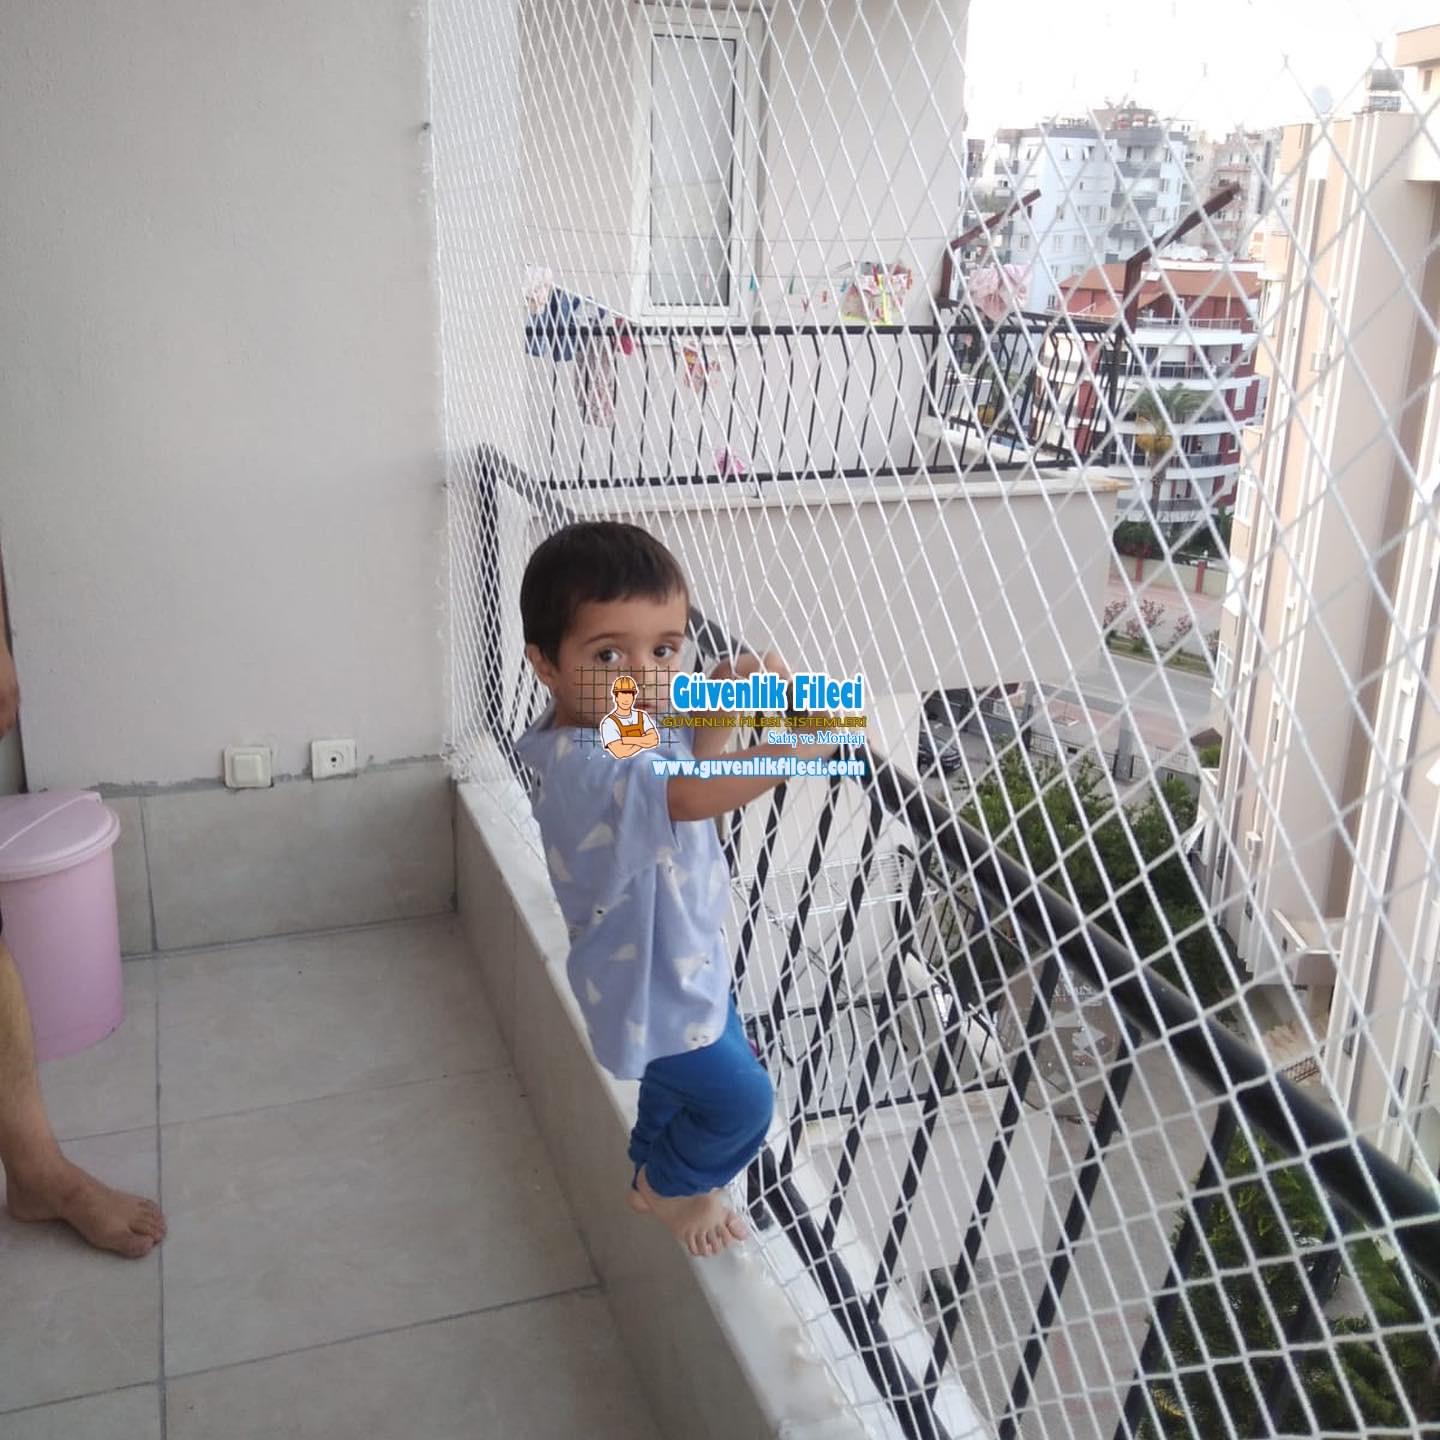 Ankara Akyurt PURSAKLAR ABADAN MAH. Balkon Güvenlik Filesi Projesi Devam Ediyor.